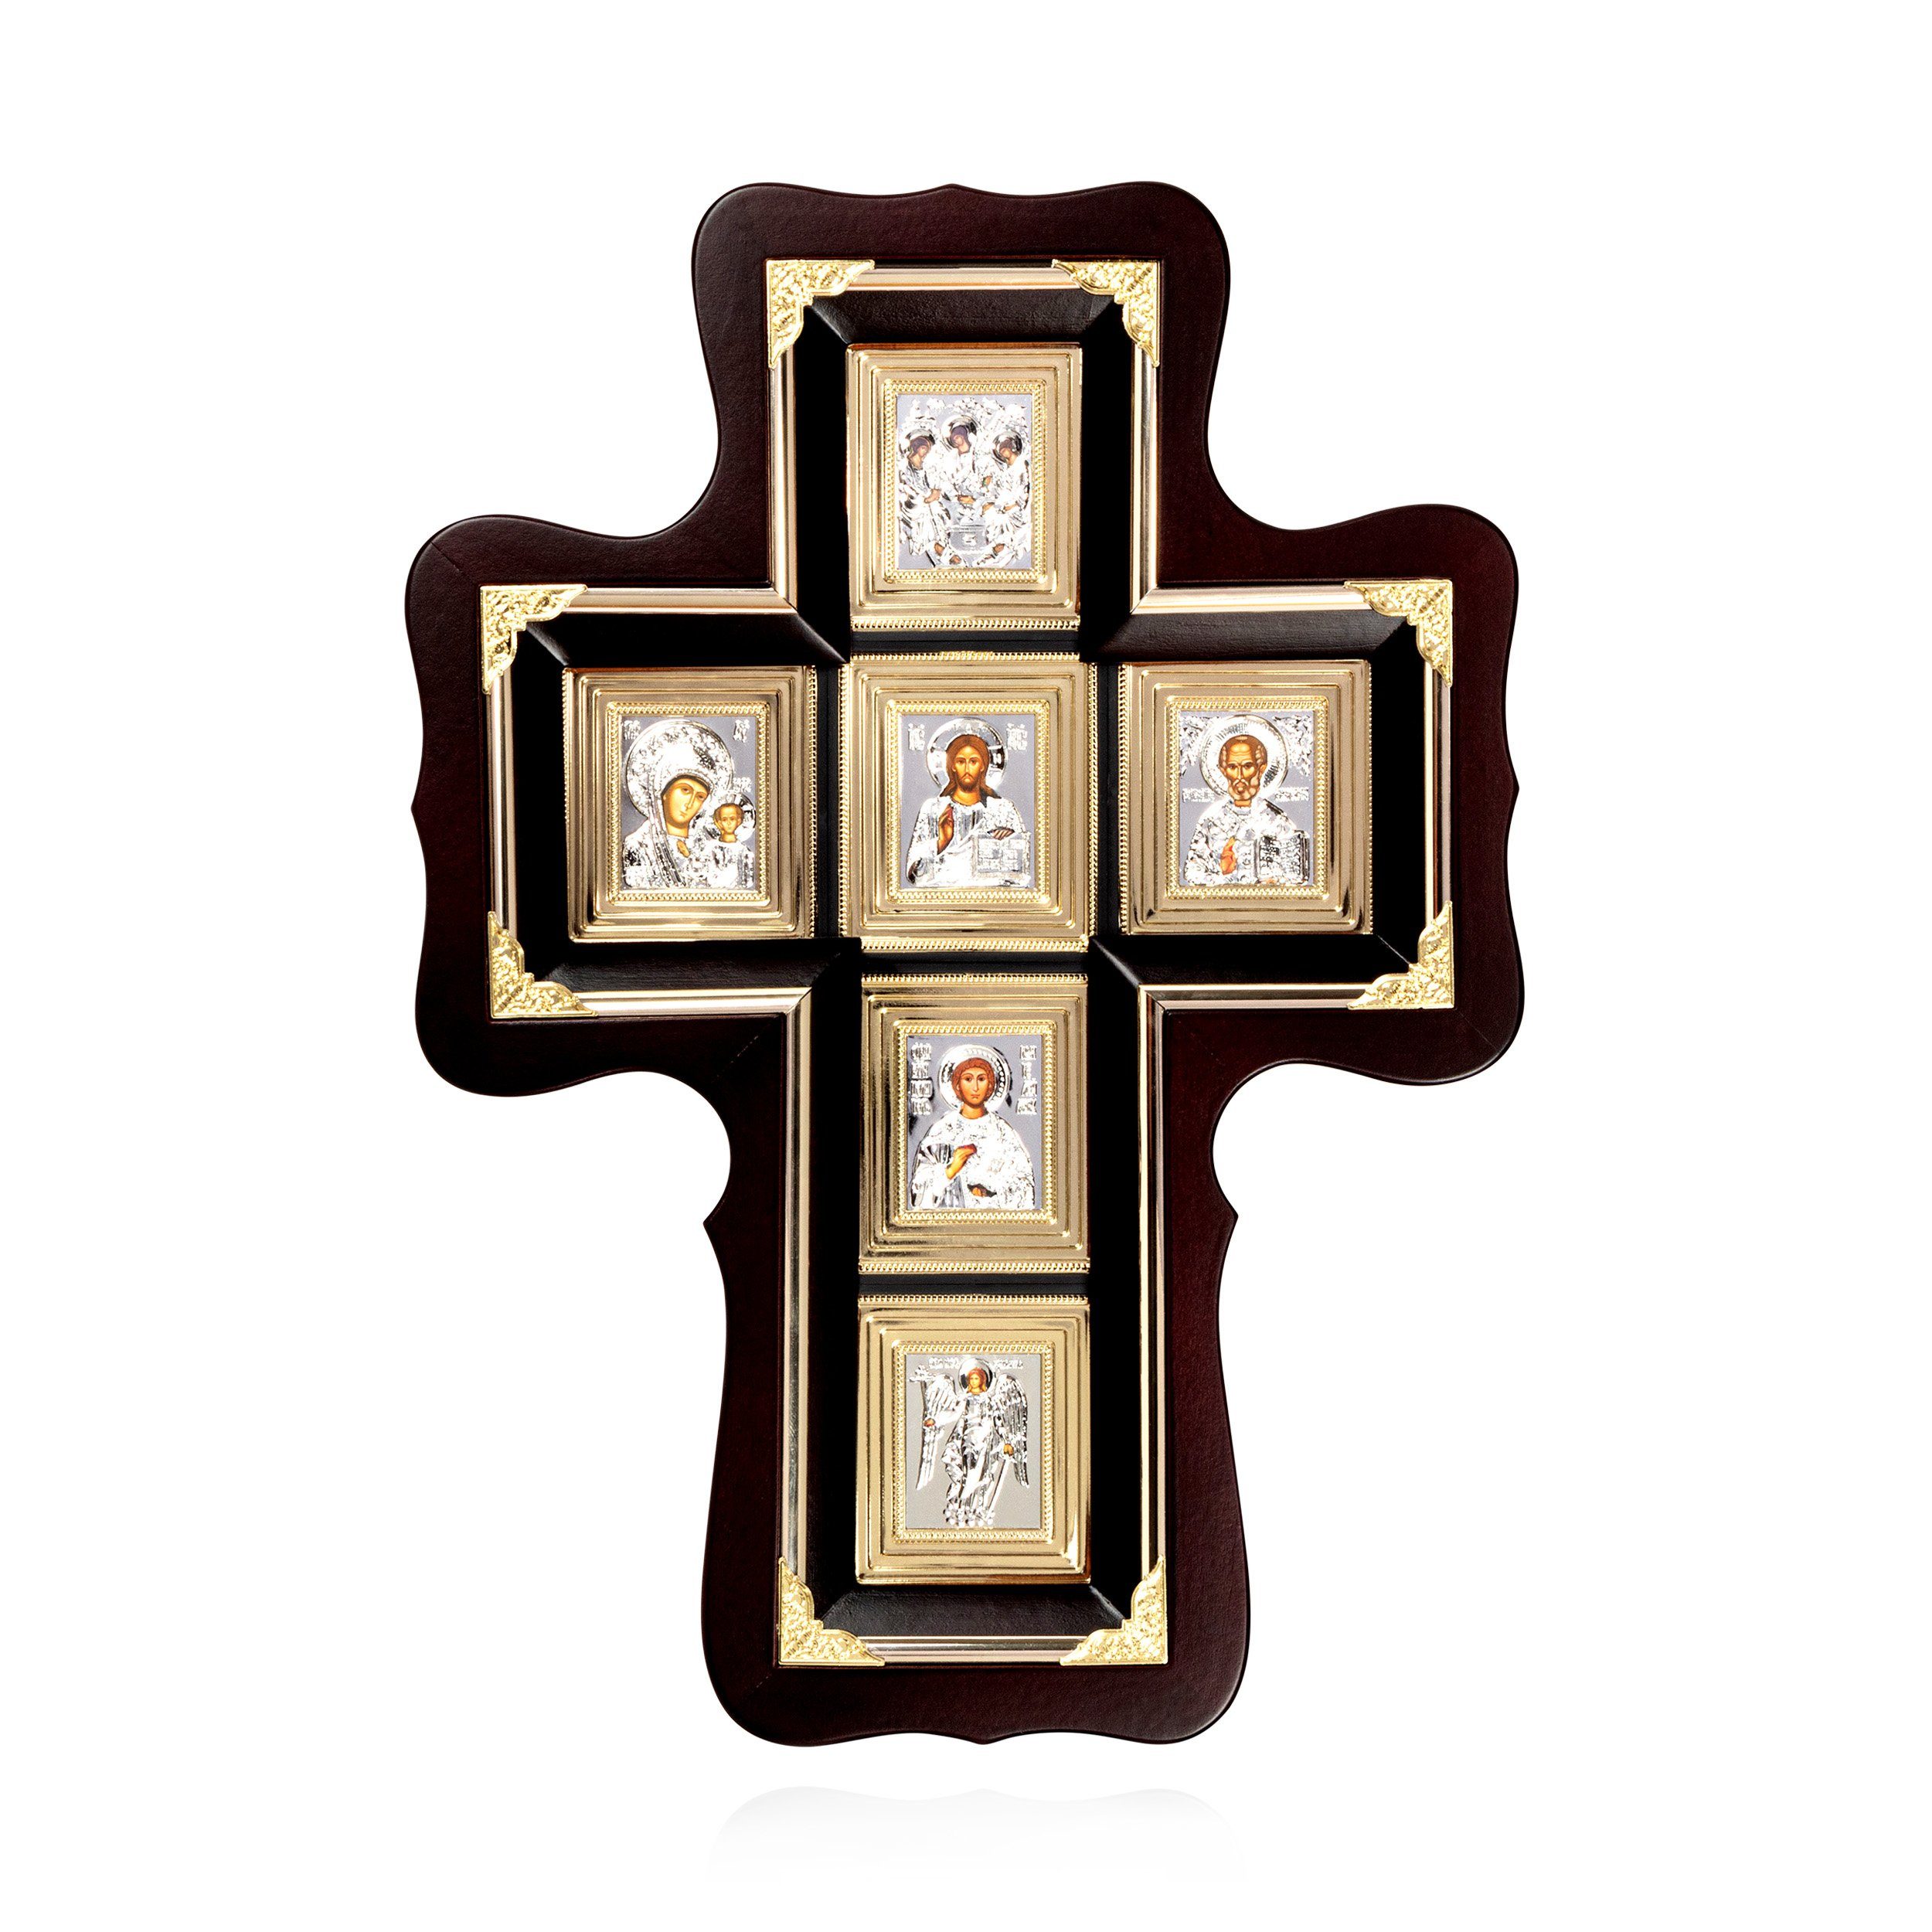 Wand-Kreuz me, NKlaus naturholz Hausaltar Religion 38x27cm Christliche Ikonen mit Glass Bild